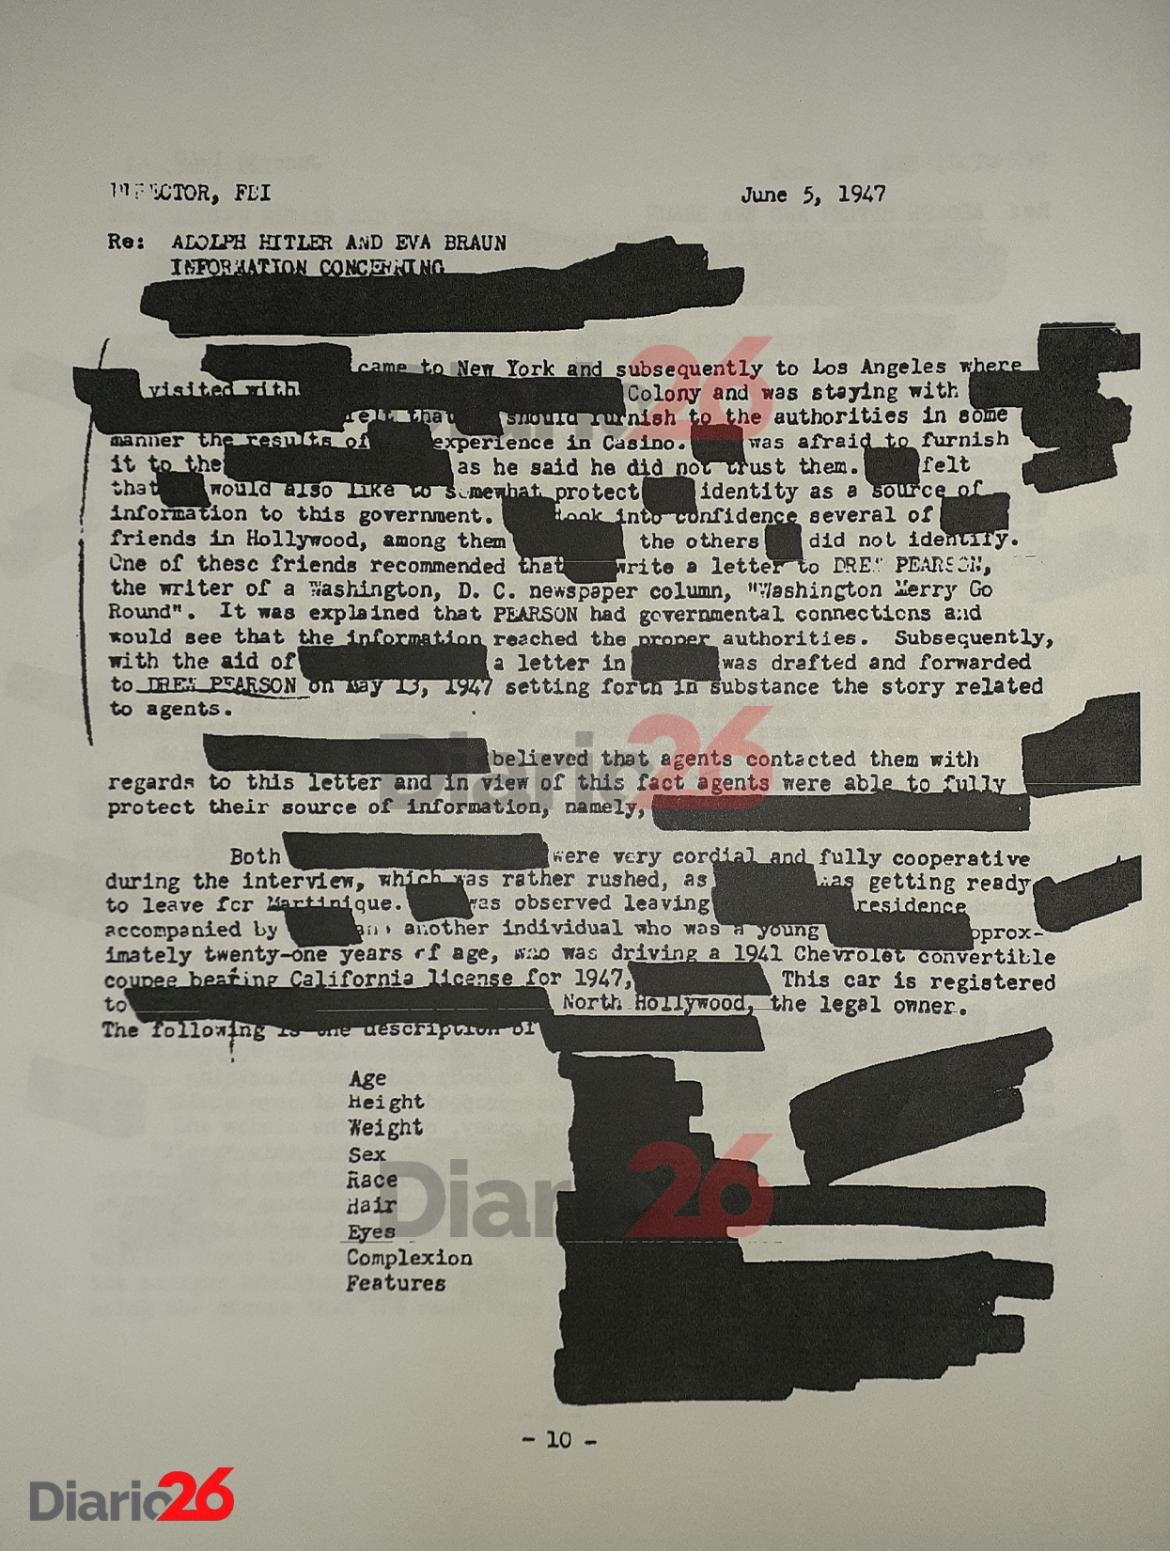 Adolf Hitler en Brasil, Hotel Atlántico, Cassino, documento desclasificado del FBI de 1947 - 10